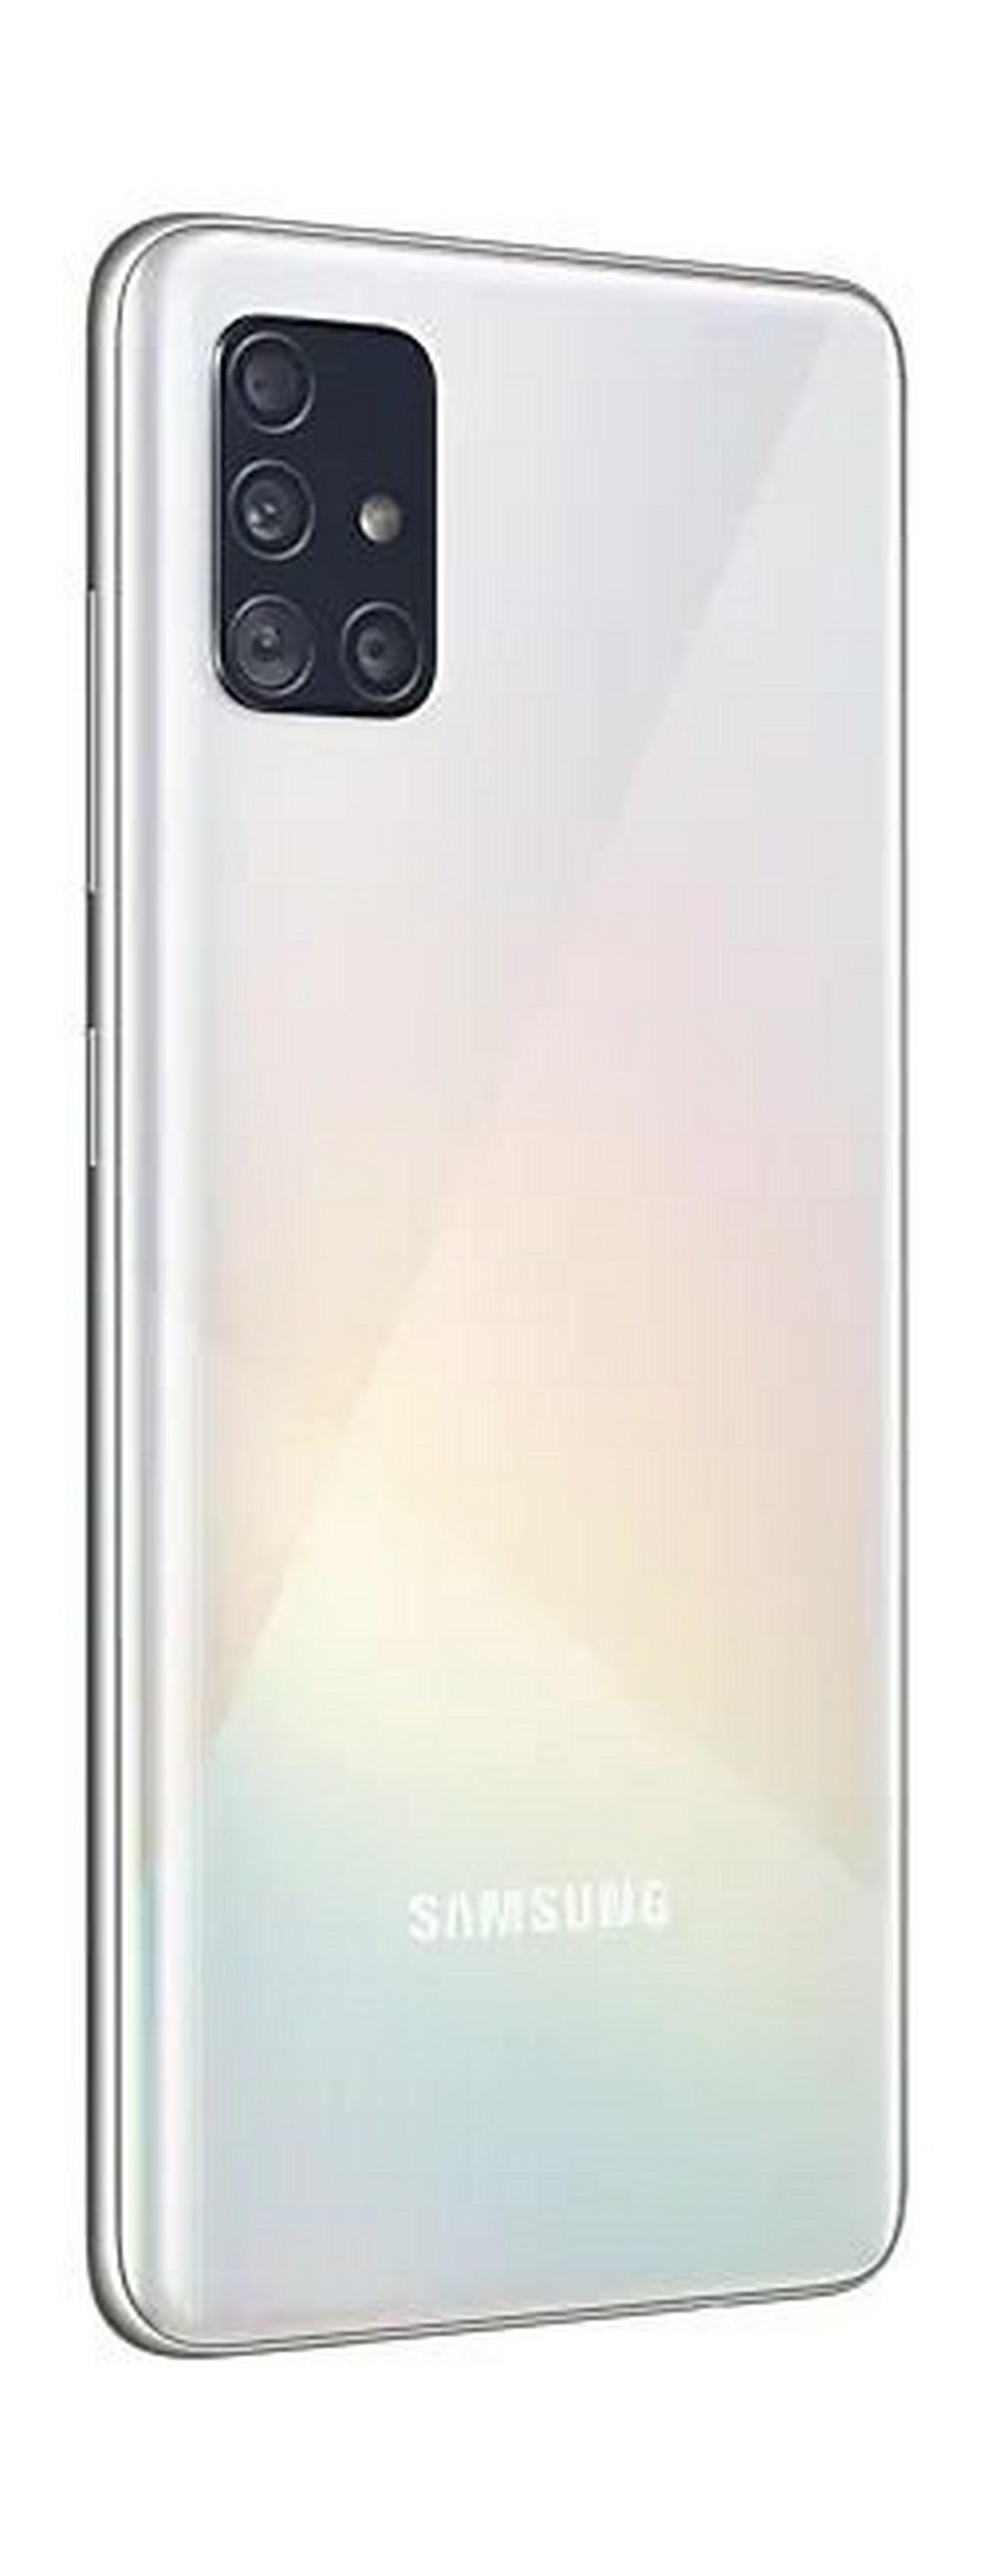 Samsung Galaxy A51 128GB Phone - White